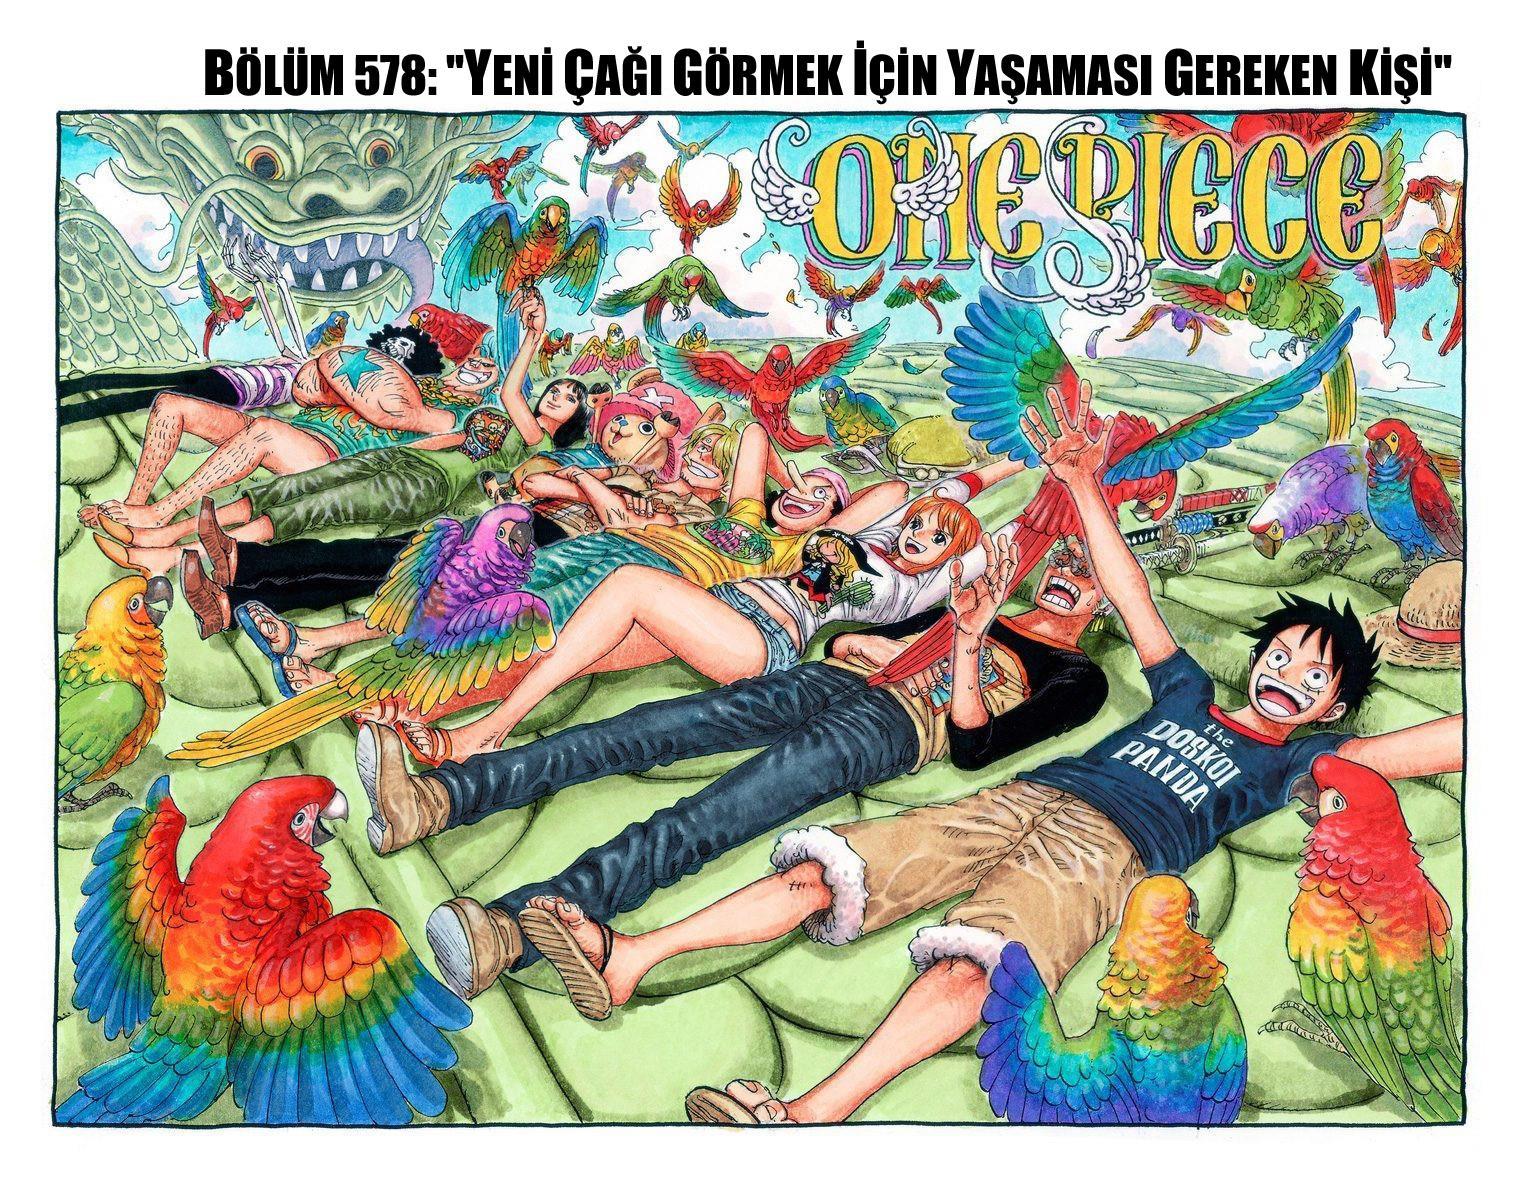 One Piece [Renkli] mangasının 0578 bölümünün 2. sayfasını okuyorsunuz.